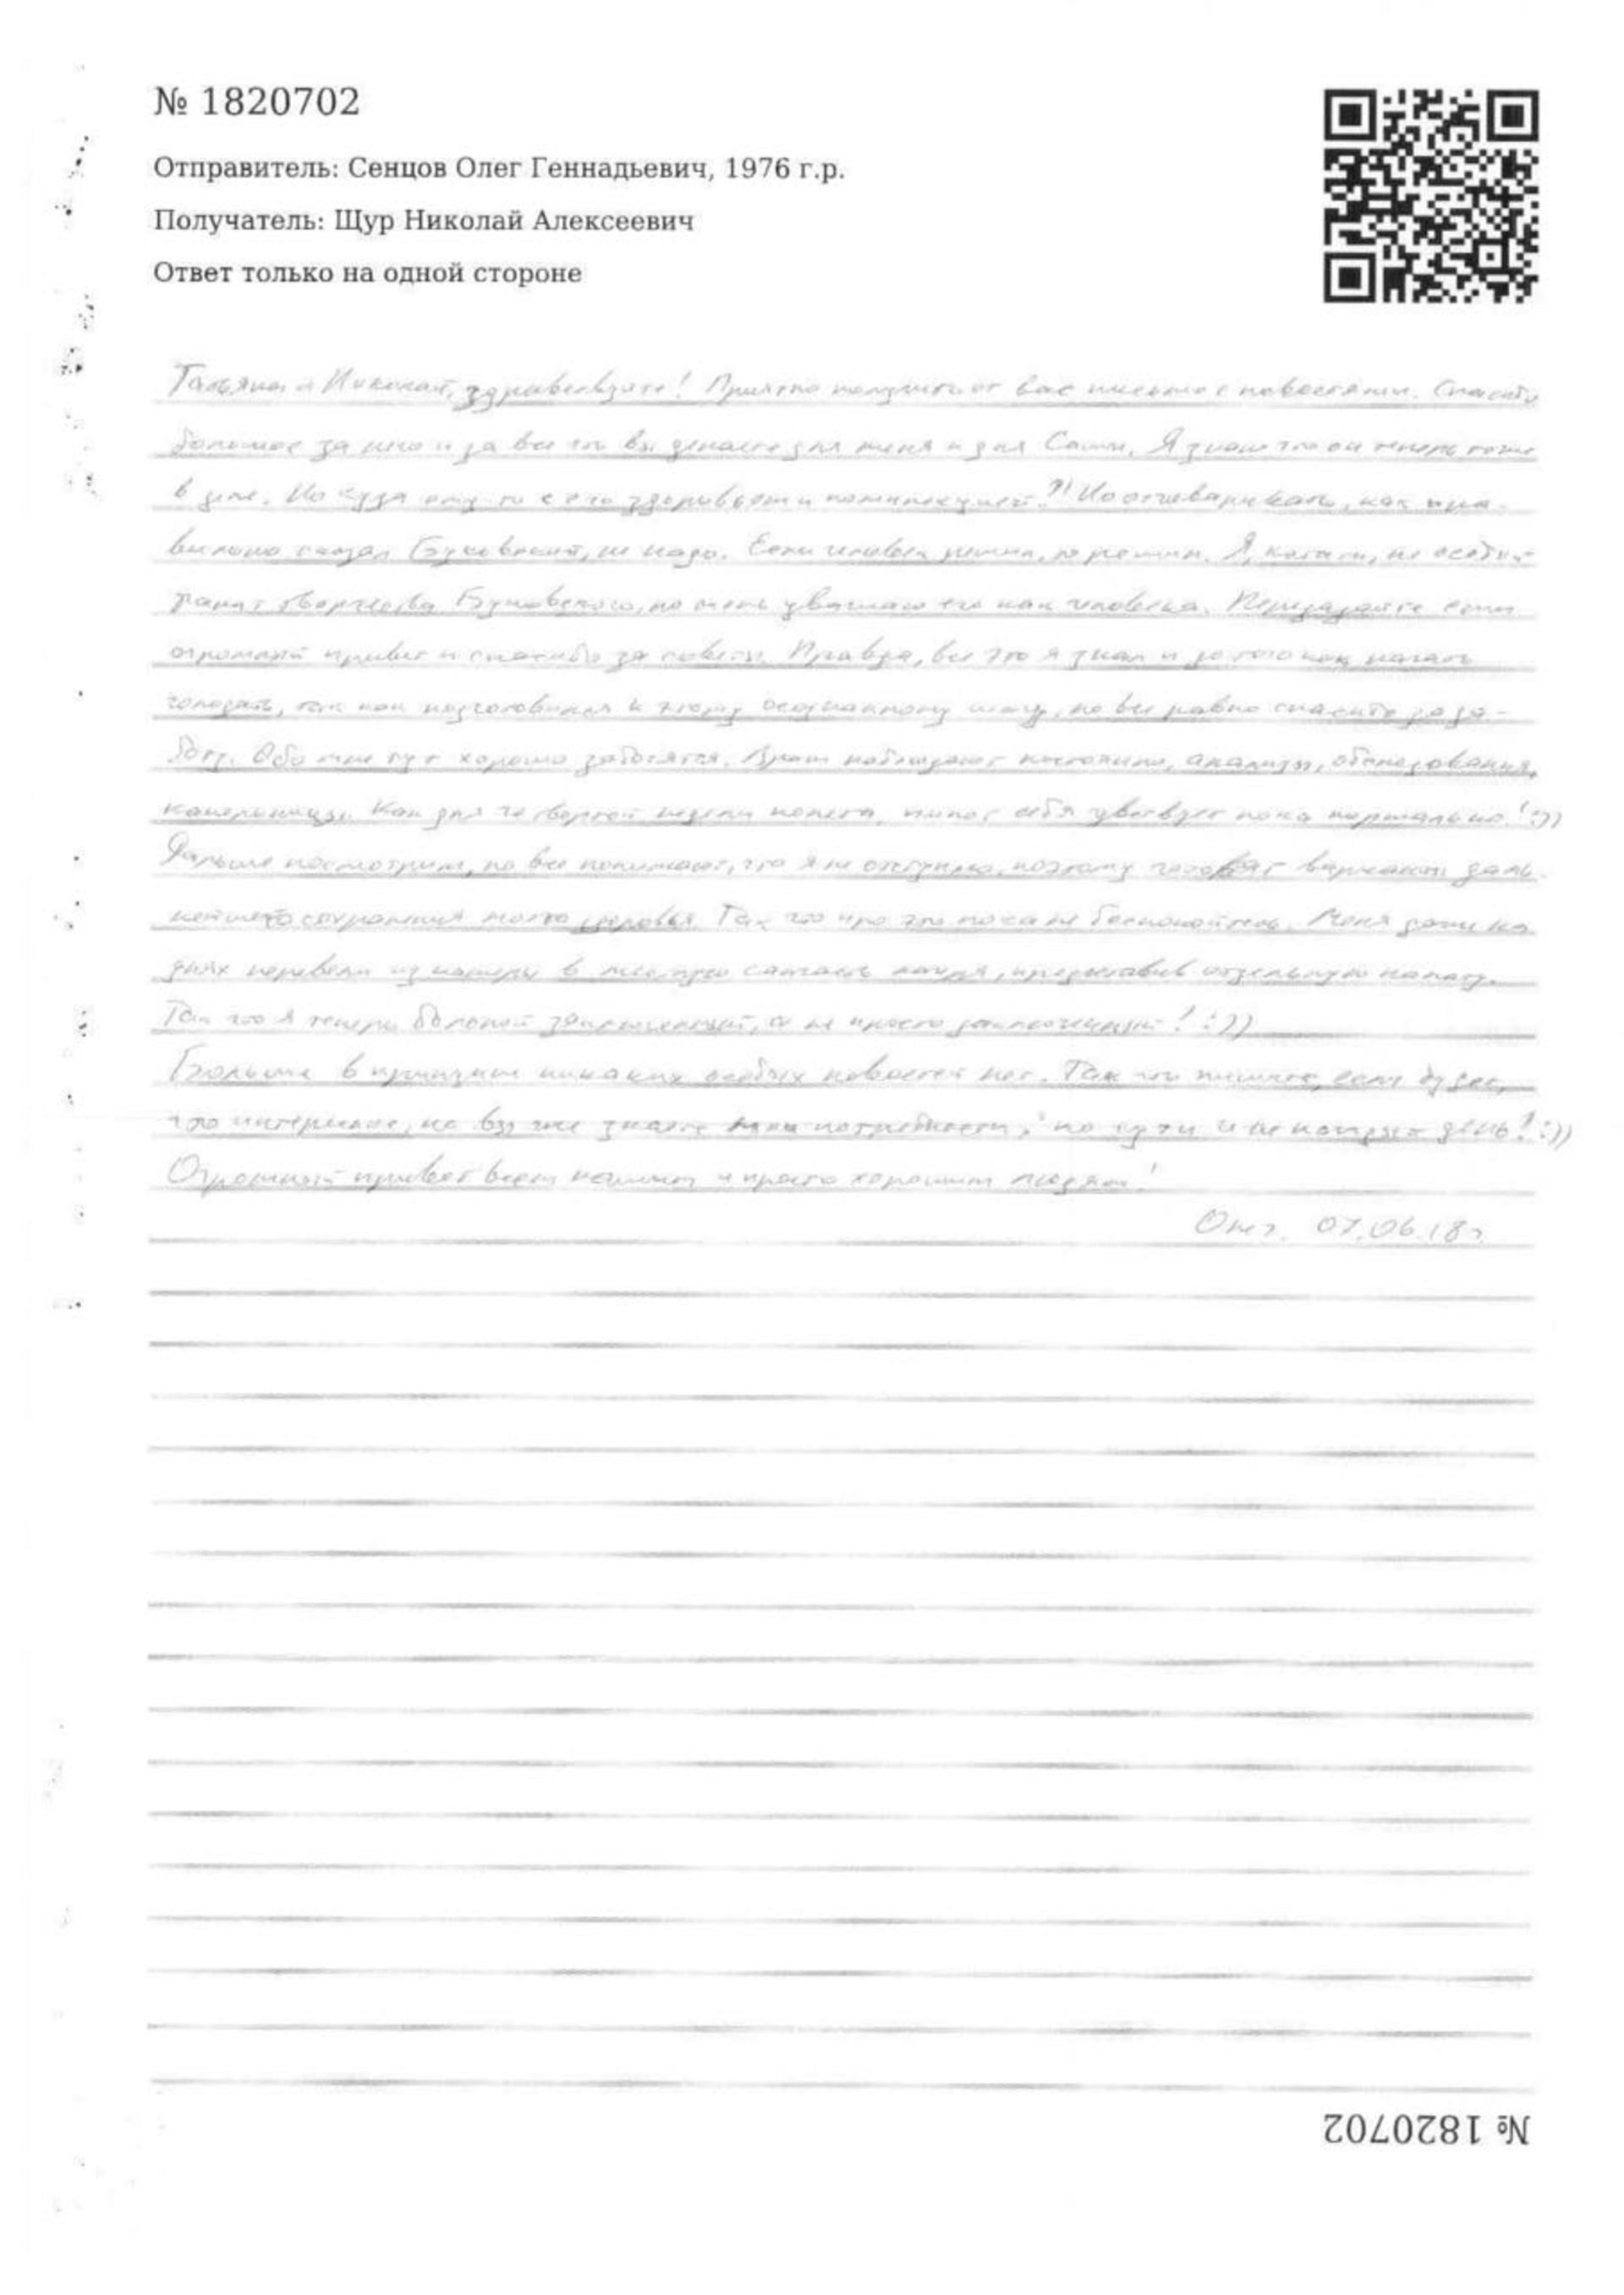 Сенцов написал из тюрьмы письмо правозащитникам - фото 129801